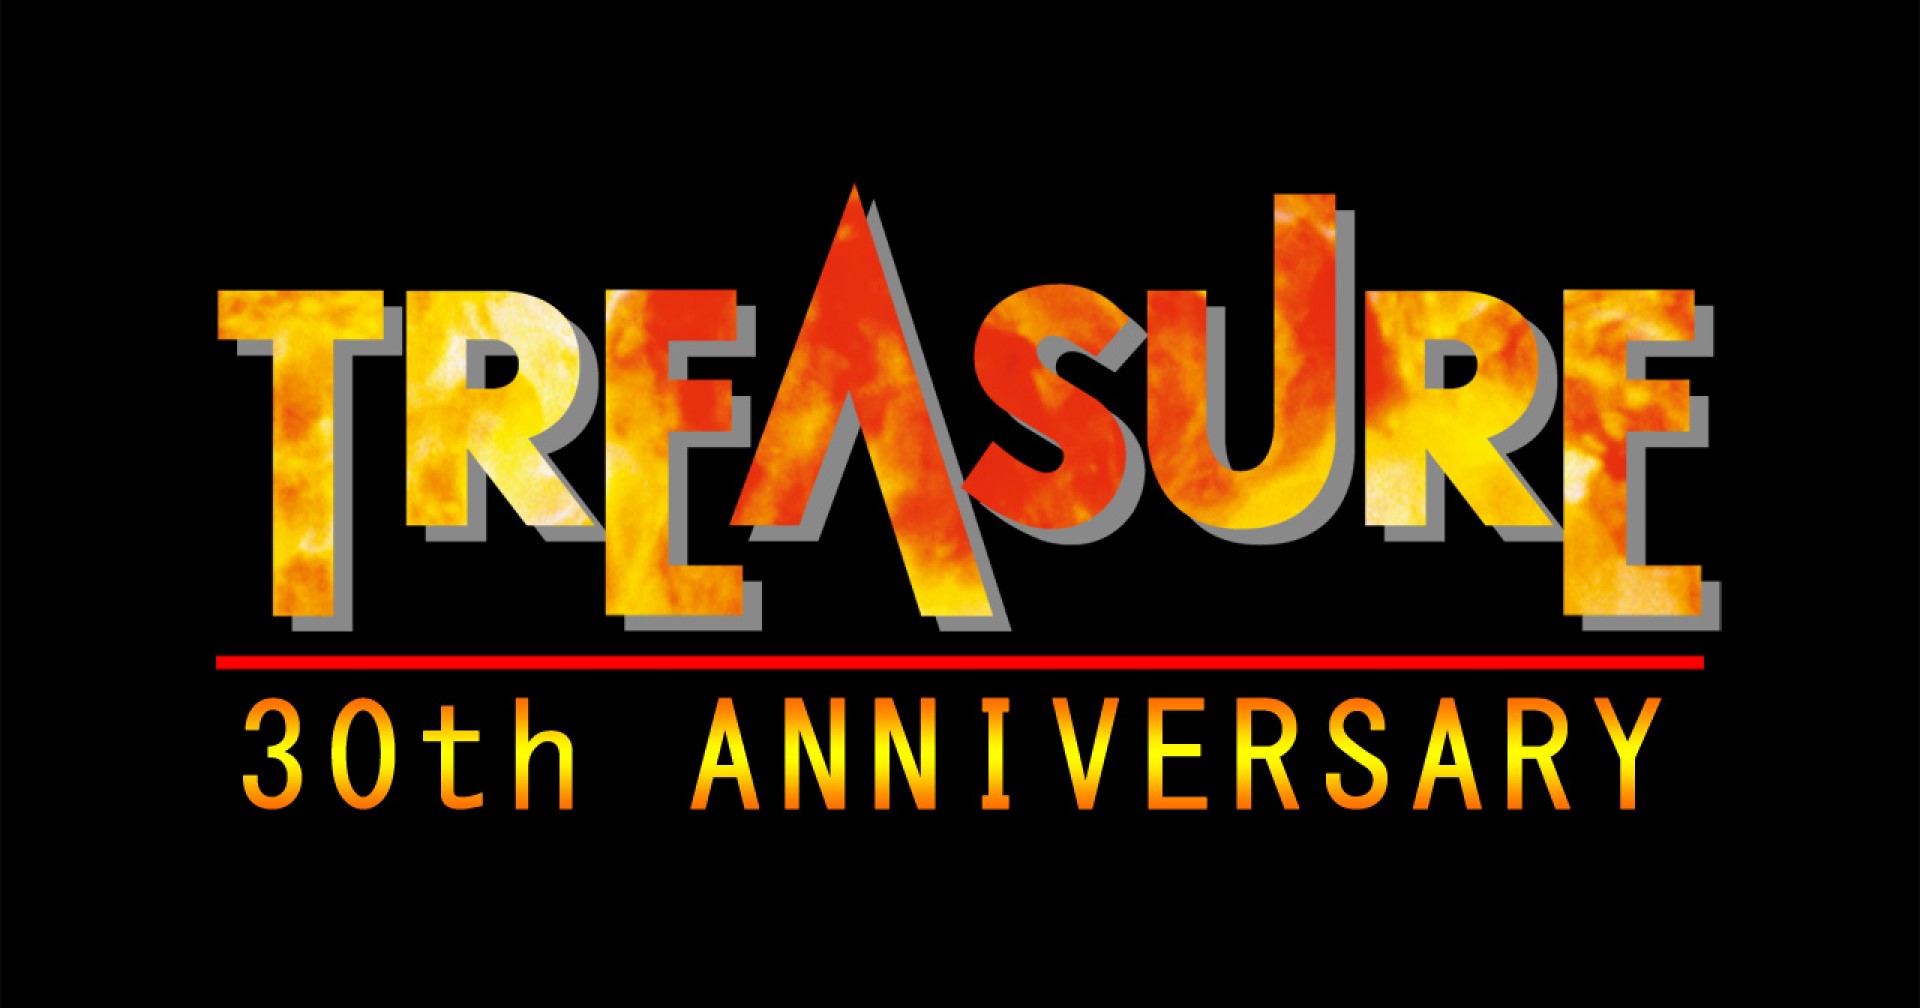 Treasure บริษัทเกมยุคเก๋ากำลังพัฒนาเกมใหม่ในโอกาสครบรอบ 30 ปีของบริษัท